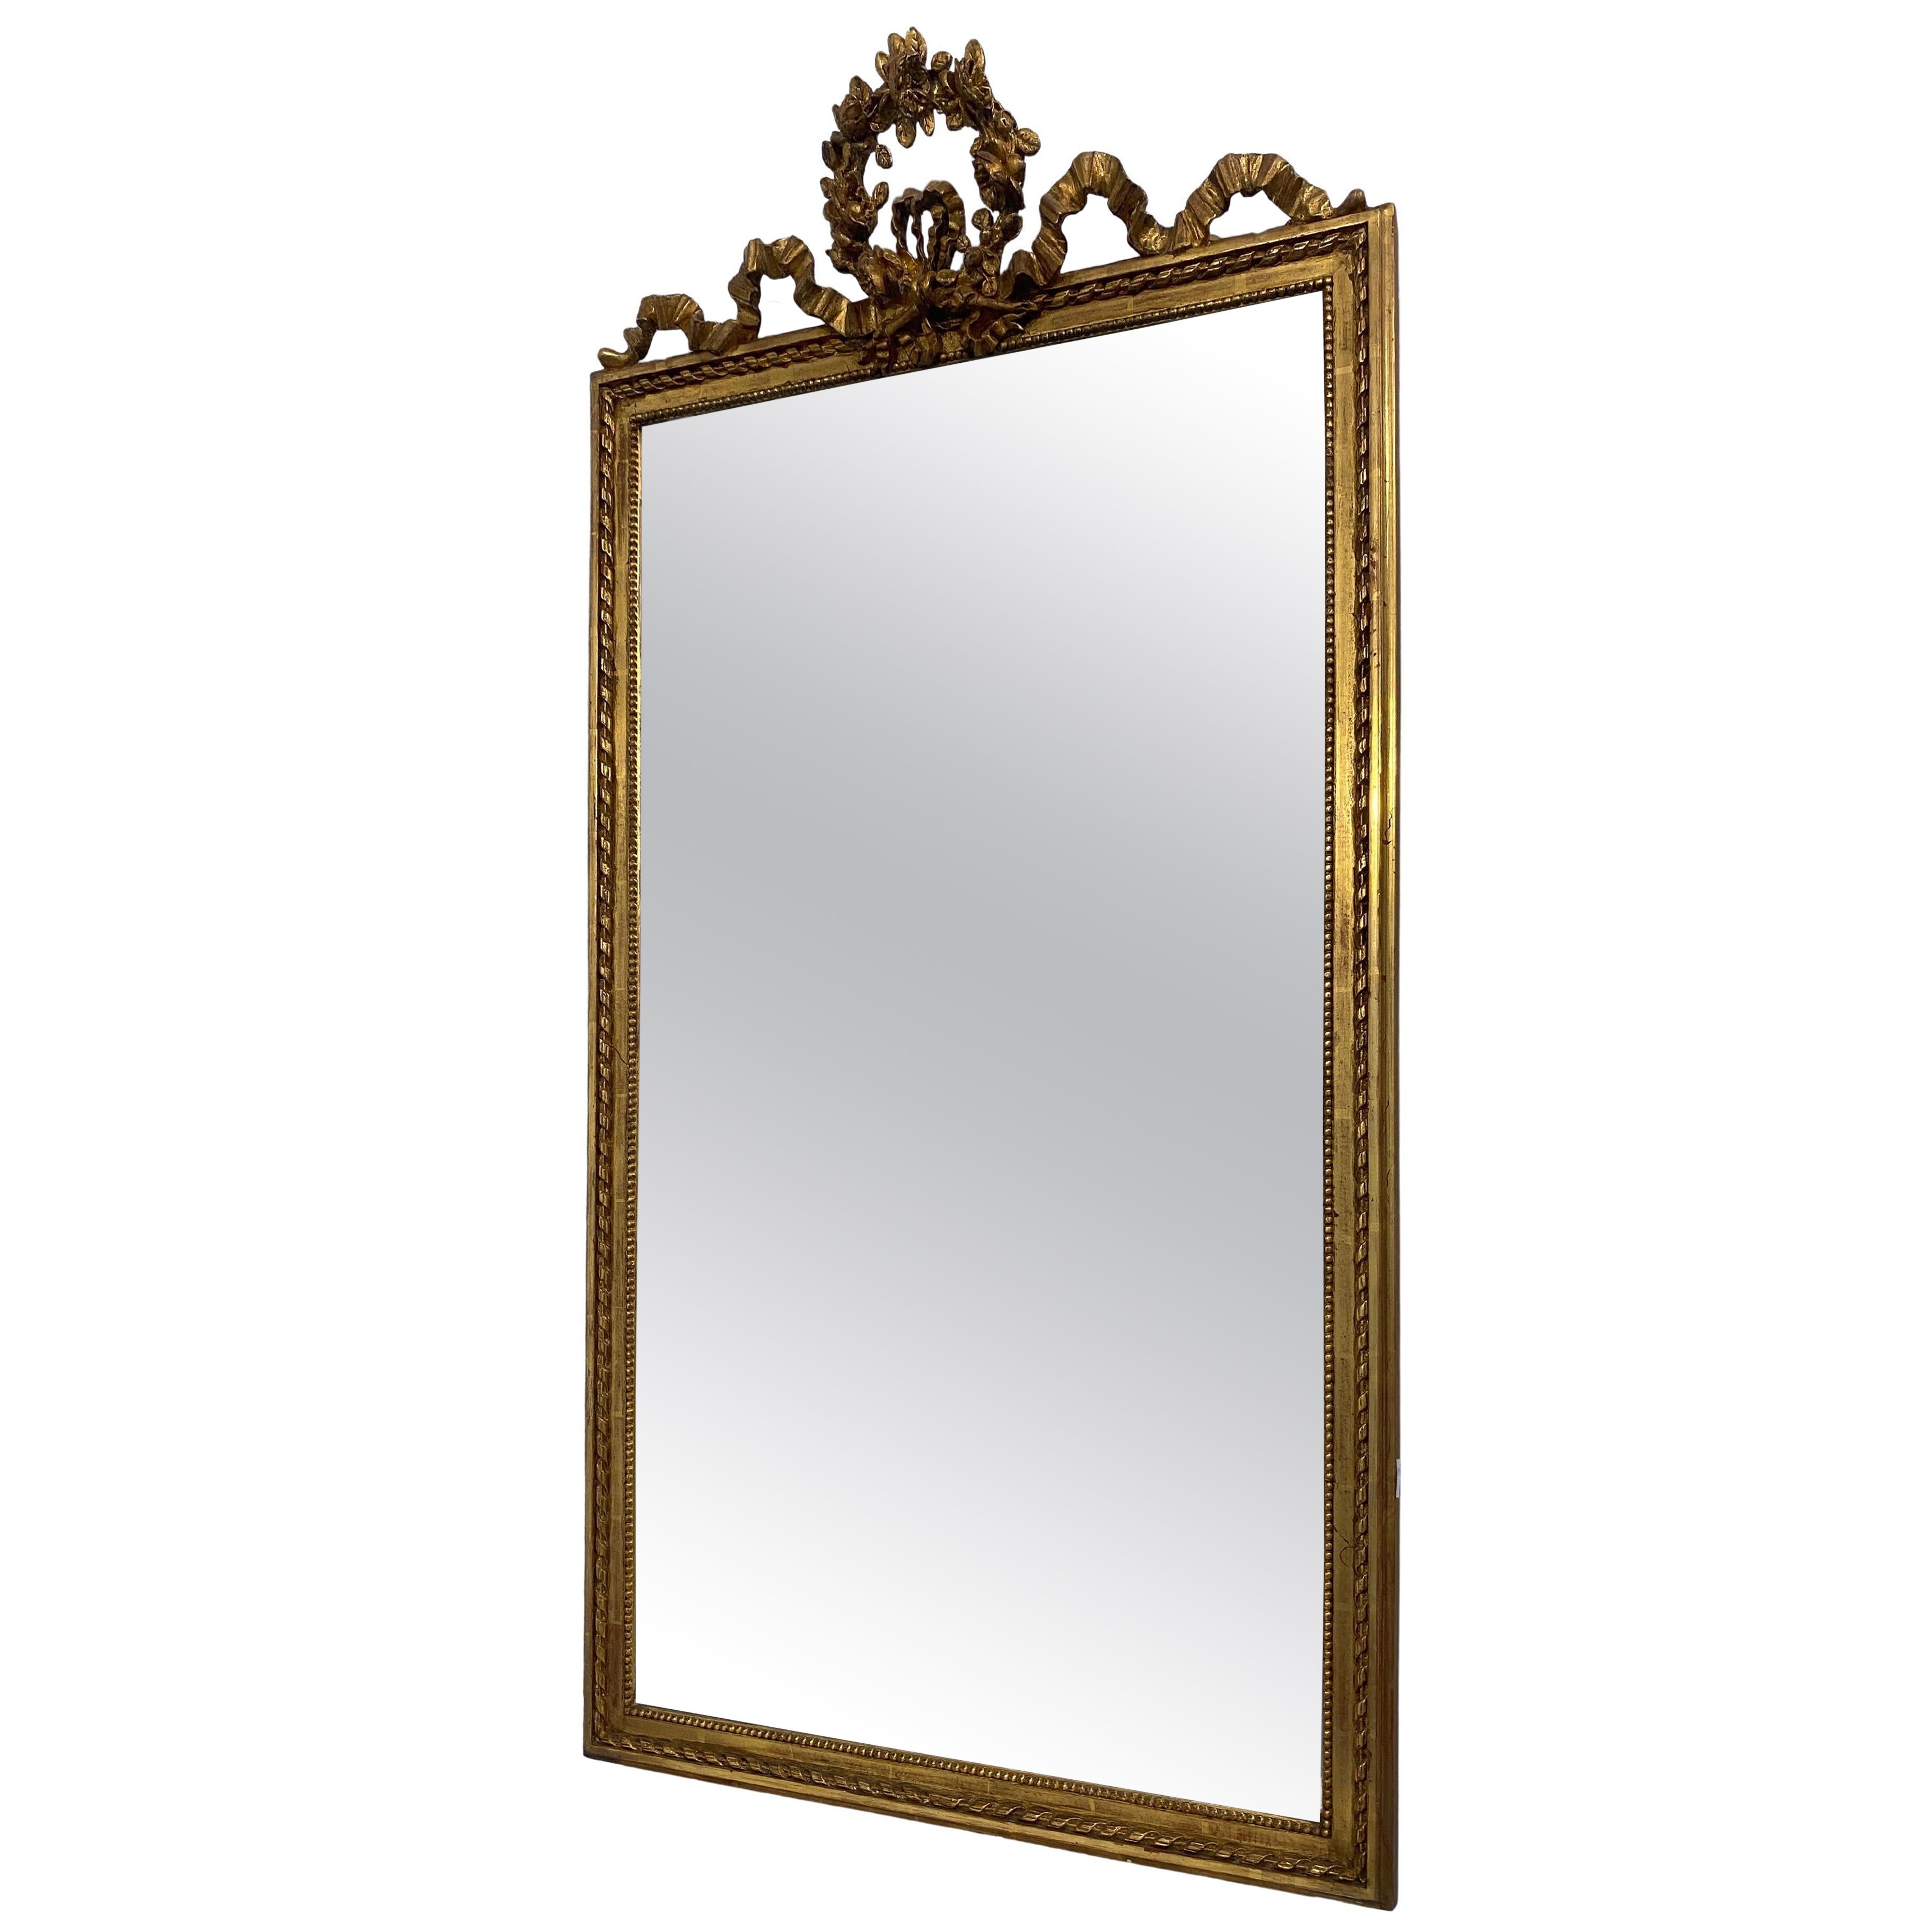 Specchio antico Dorato Grande Stile Art Nouveau Barocco vintage epoca oro